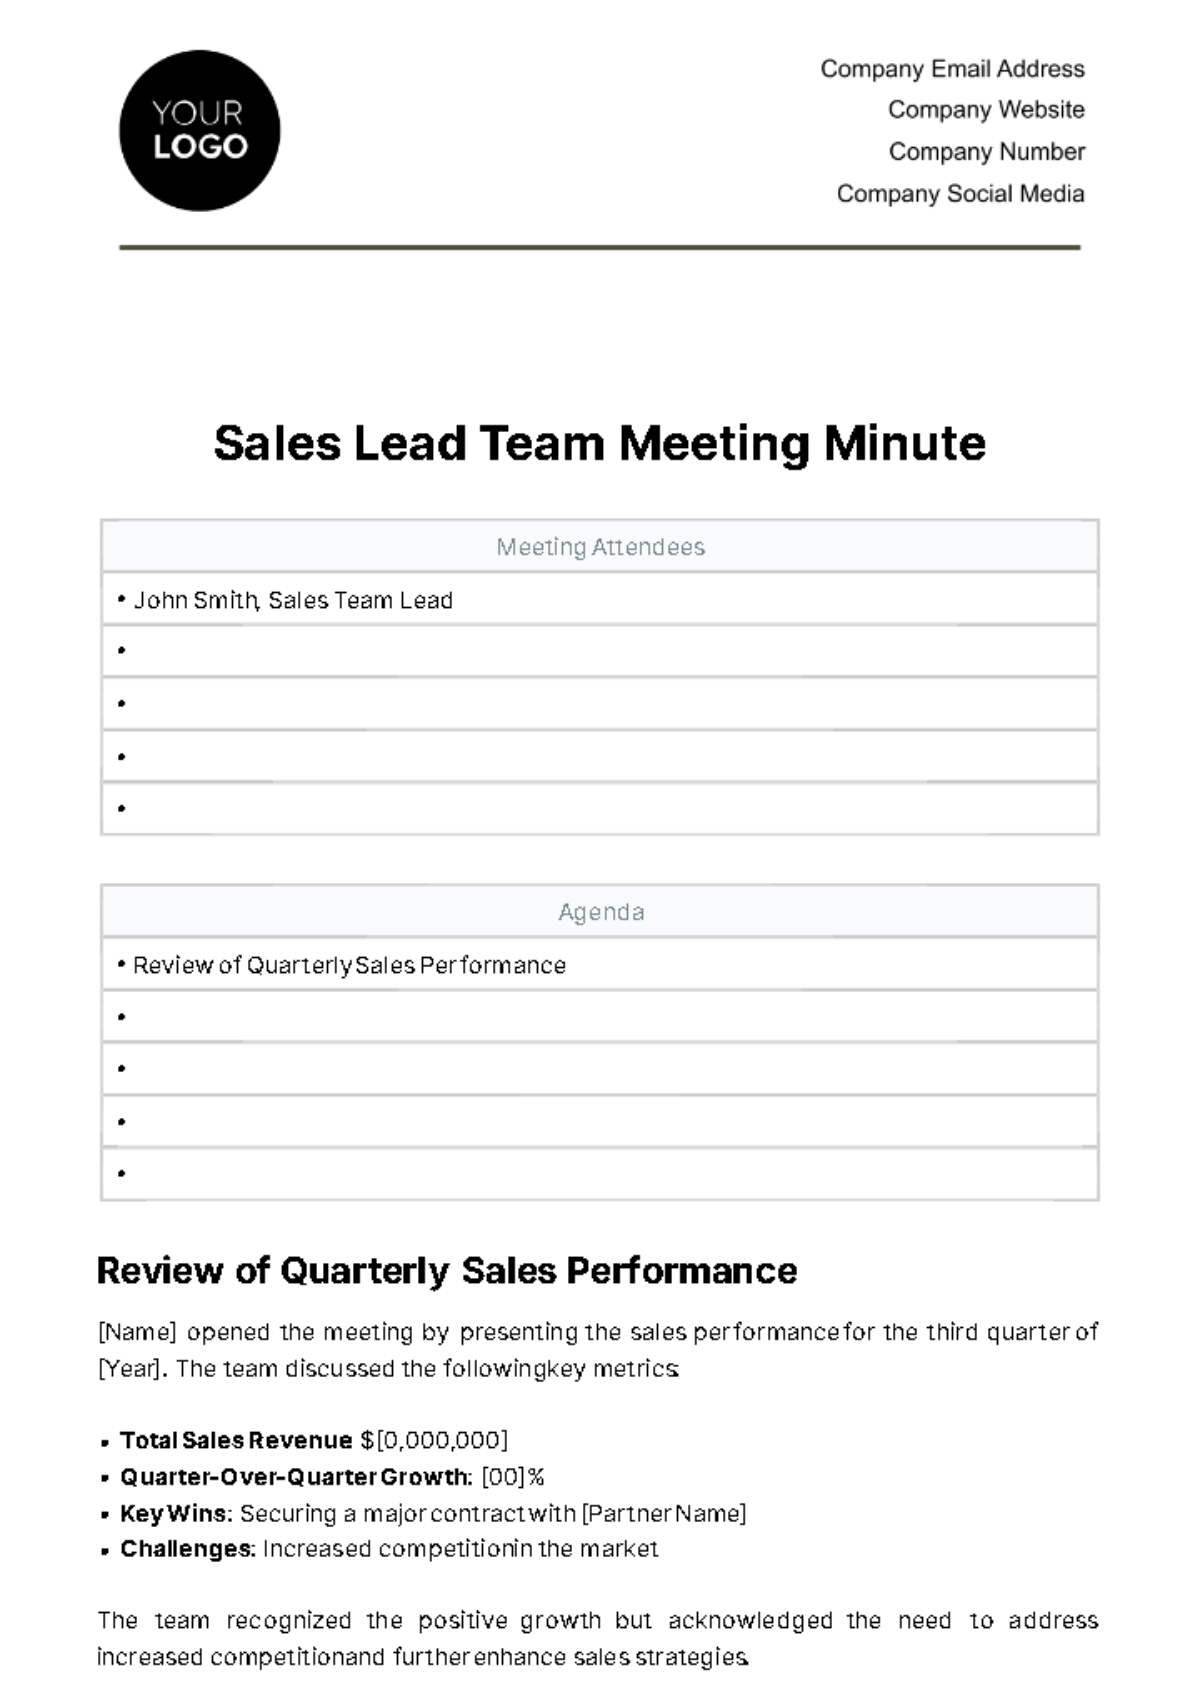 Free Sales Lead Team Meeting Minute Template